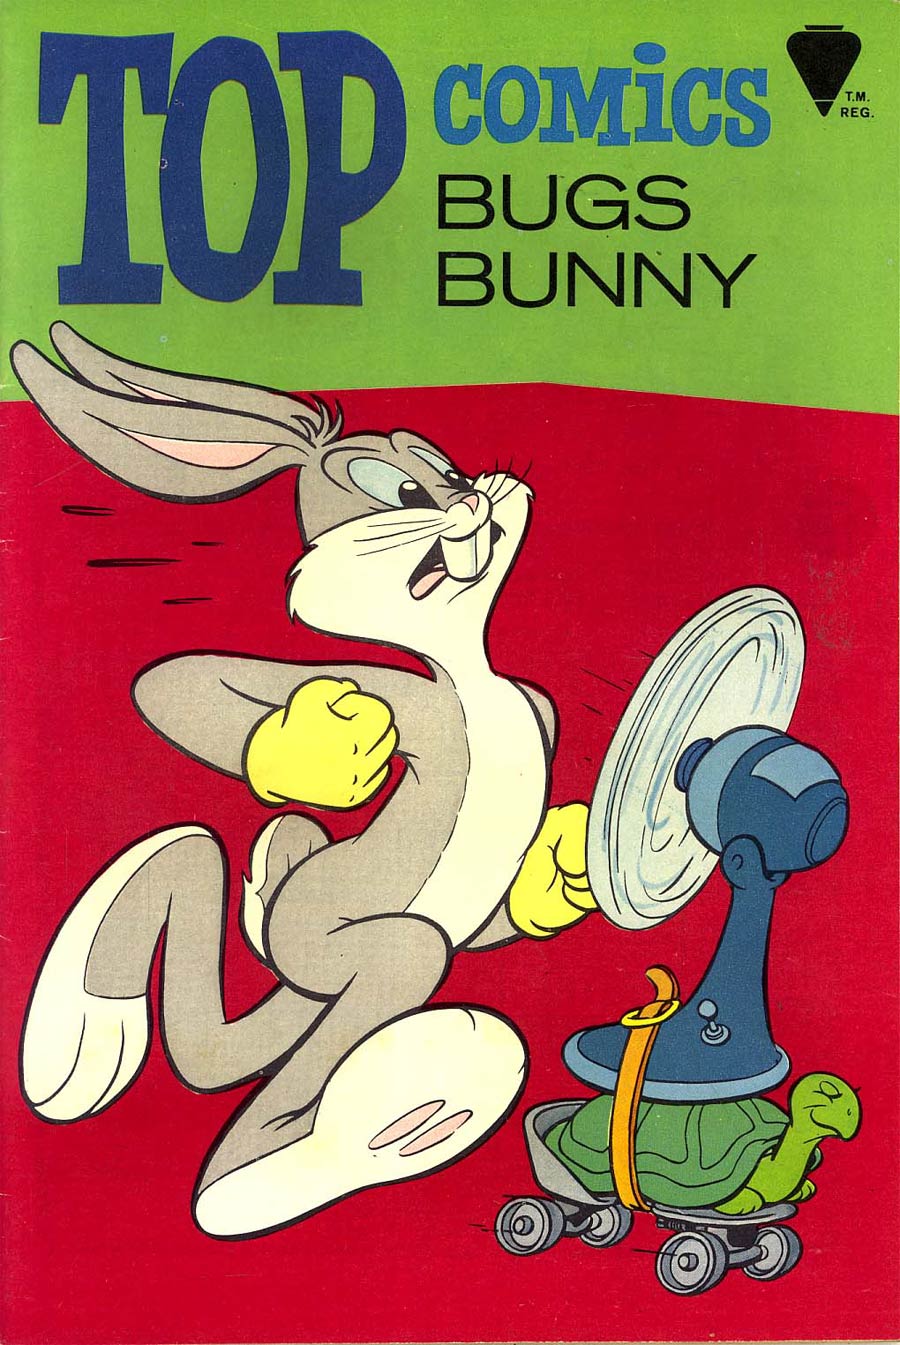 Top Comics #2 Bugs Bunny